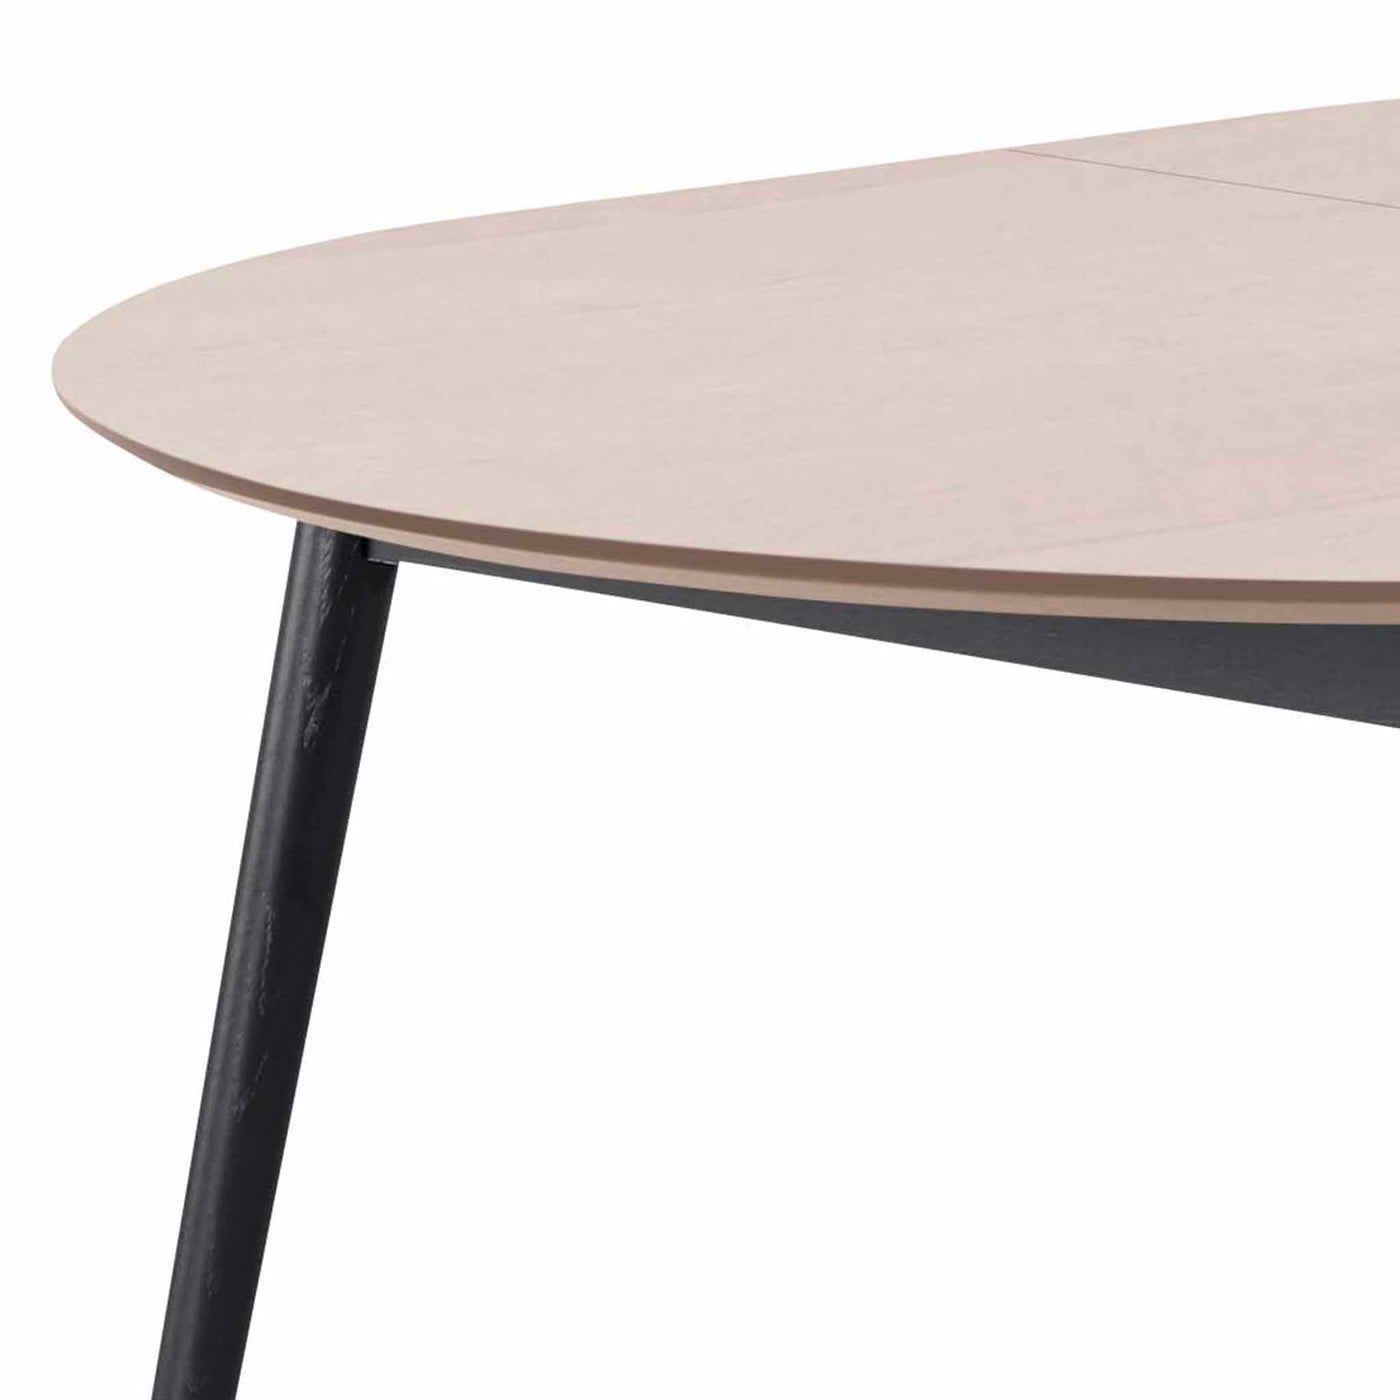 Meza by Hammel Round spisebord med bordplade i hvidpigmenteret eg og ben i sortbejdset ask.